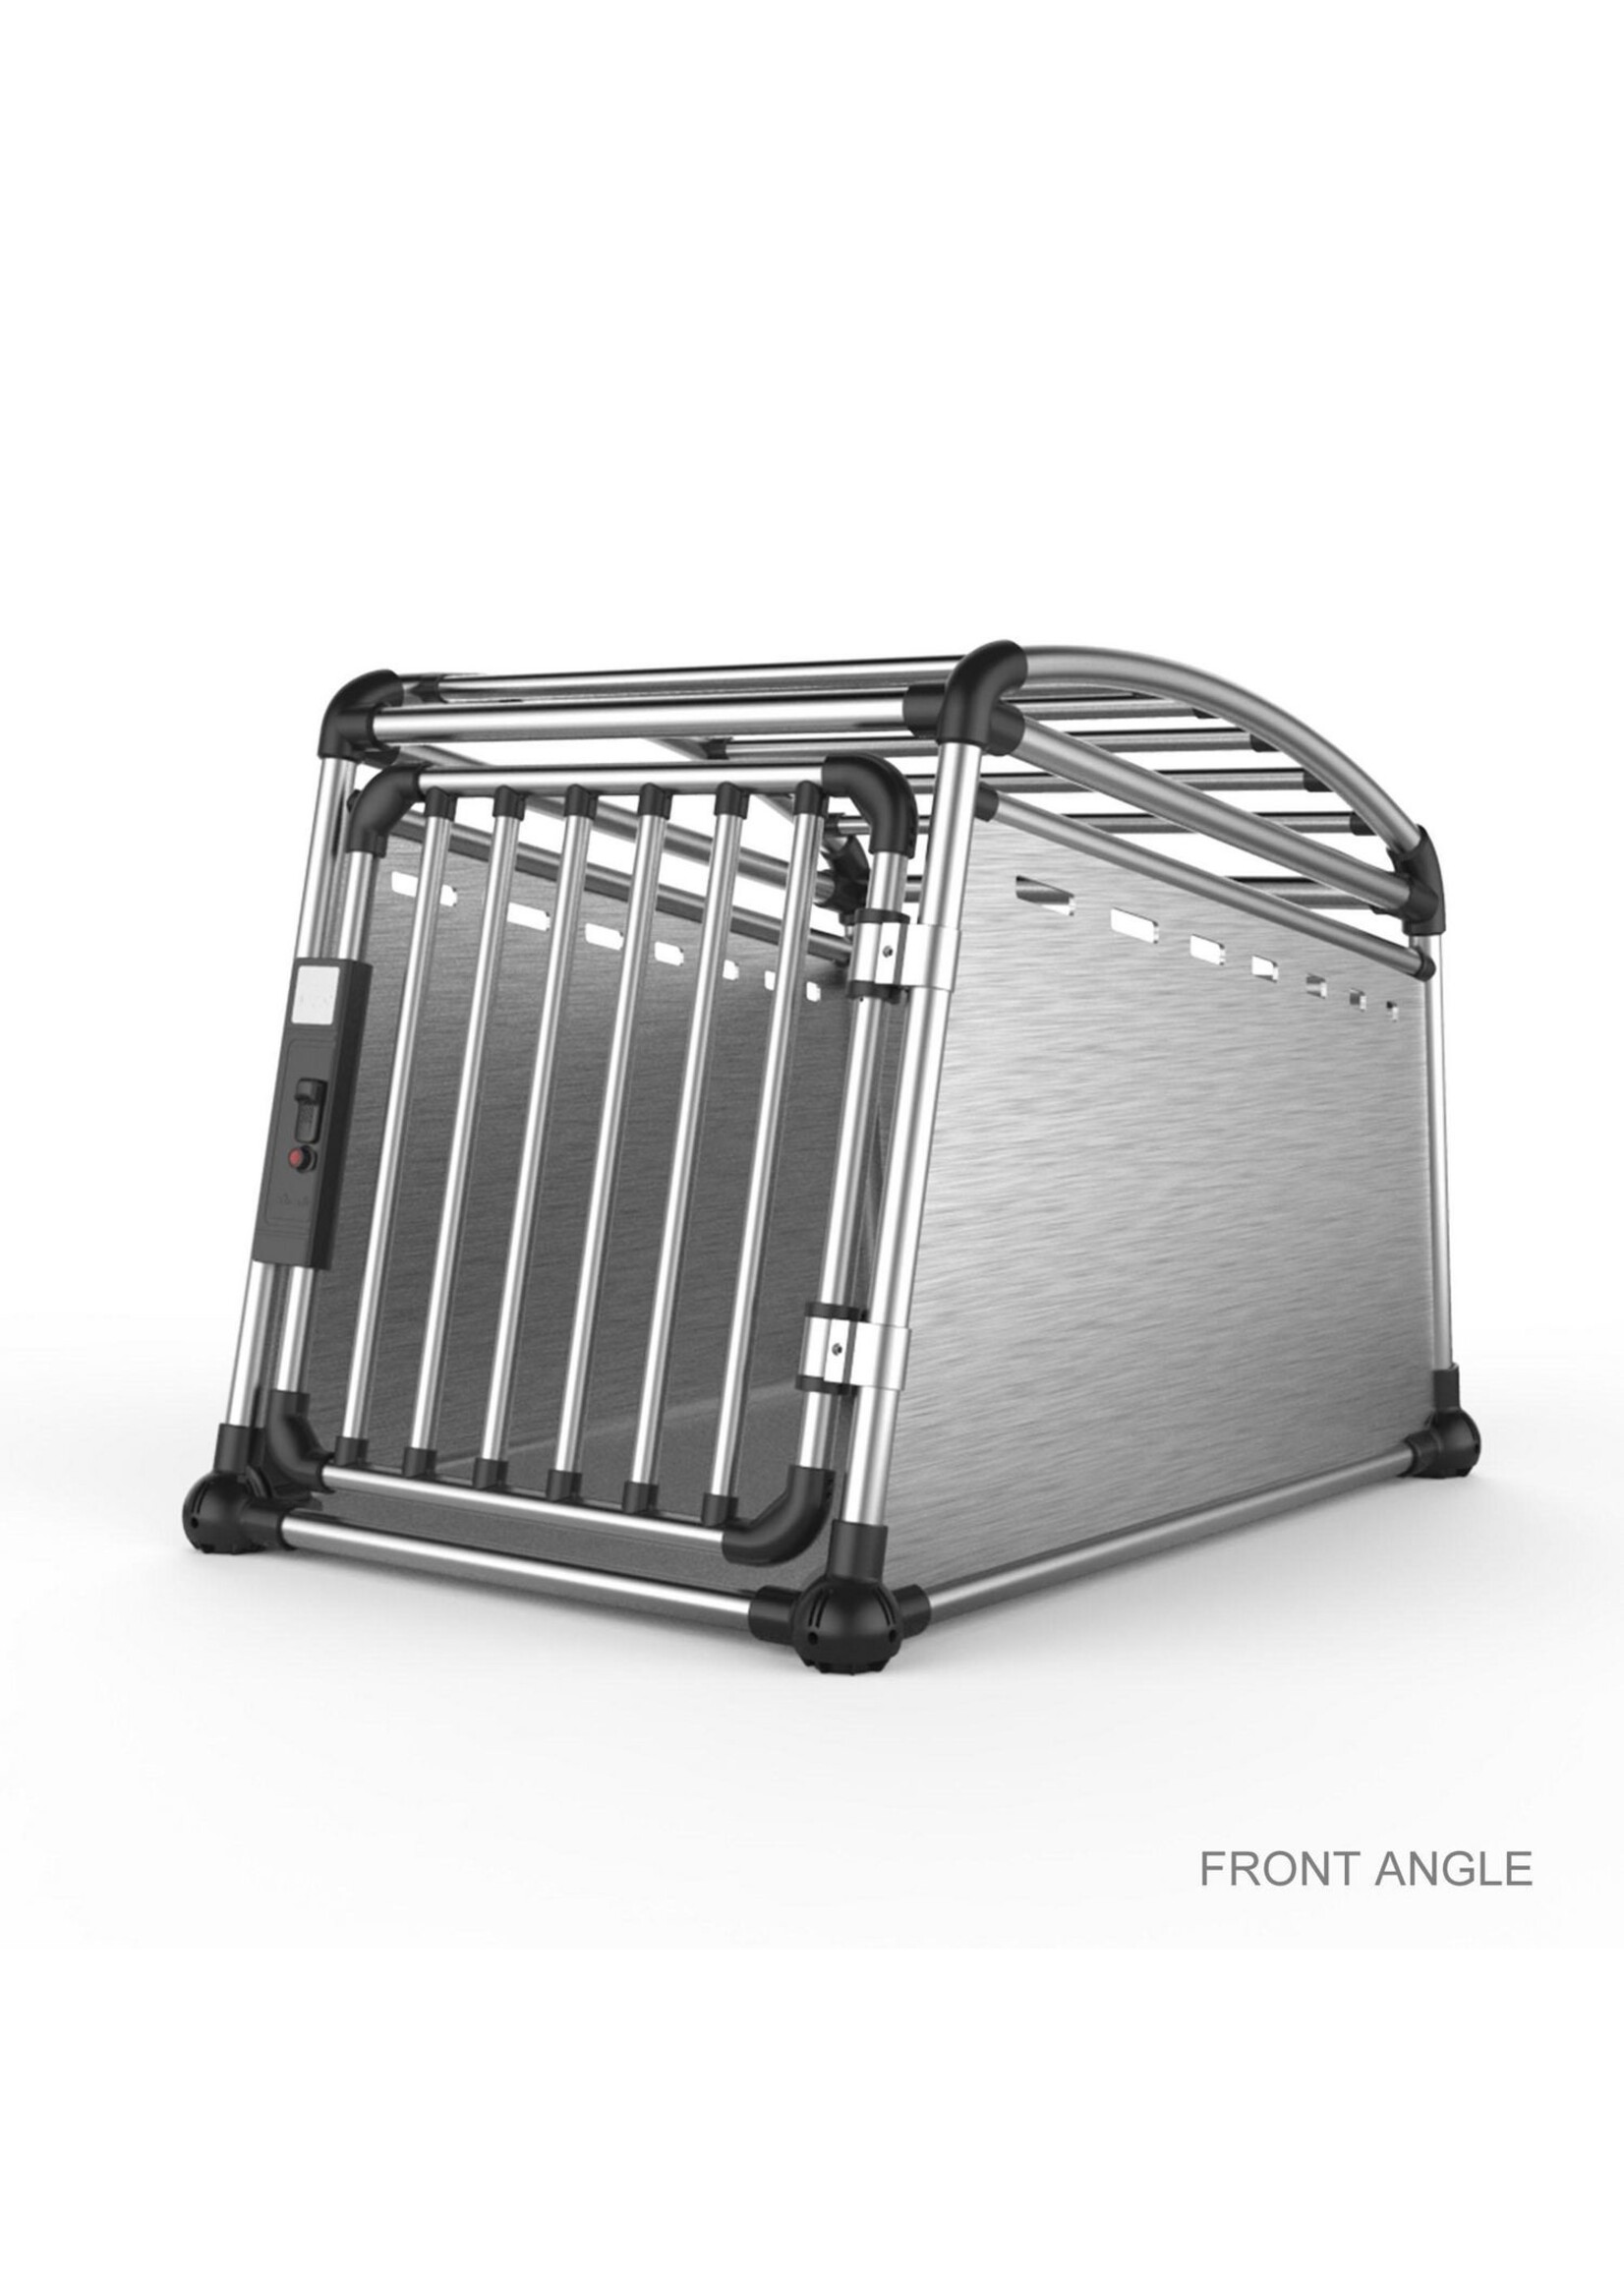 All Four Paws Aluminium Travel Crate